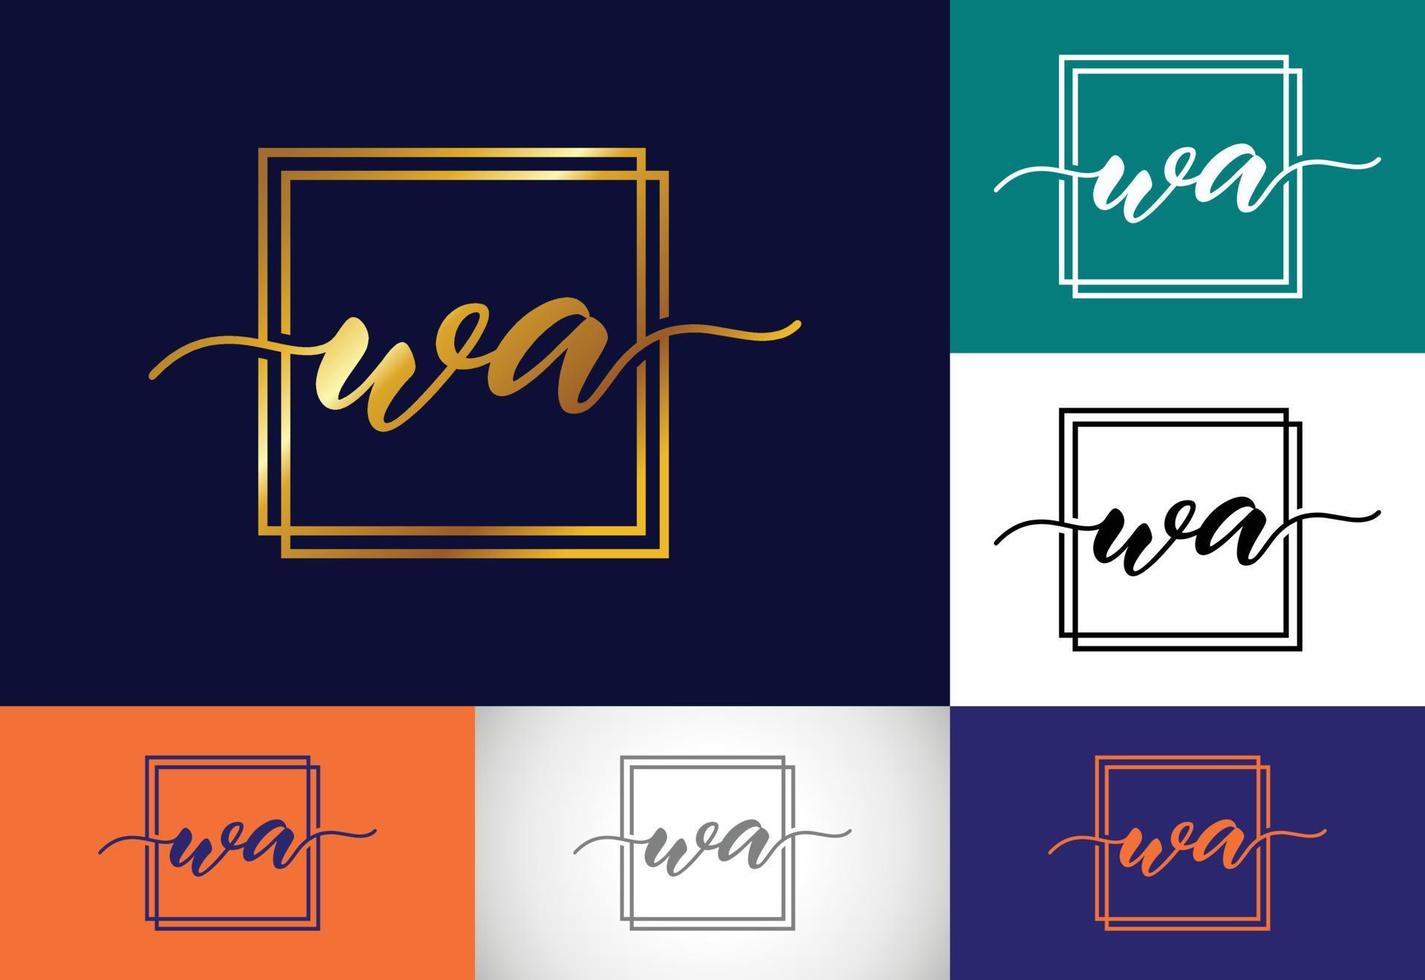 plantilla de vector de diseño de logotipo de letra monograma inicial wa. diseño de logotipo de letra wa